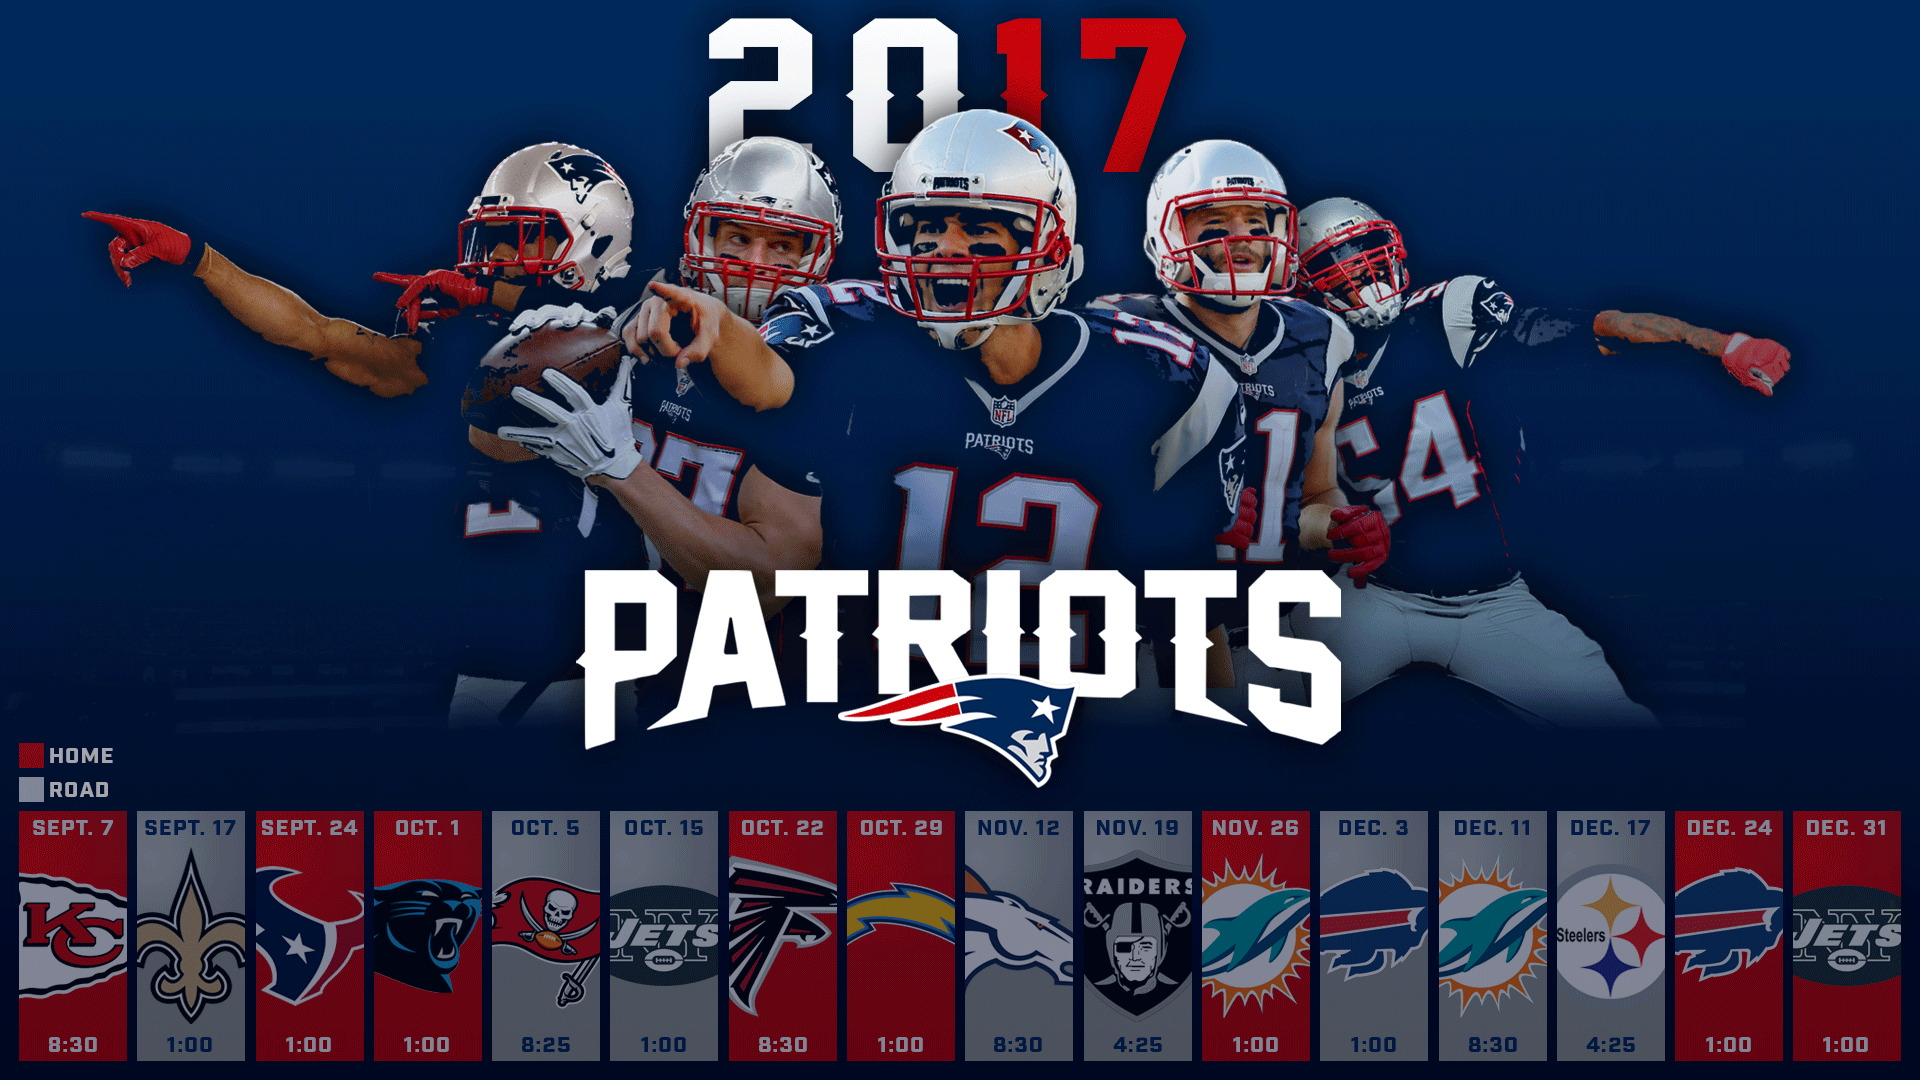 Patriots Schedule Background